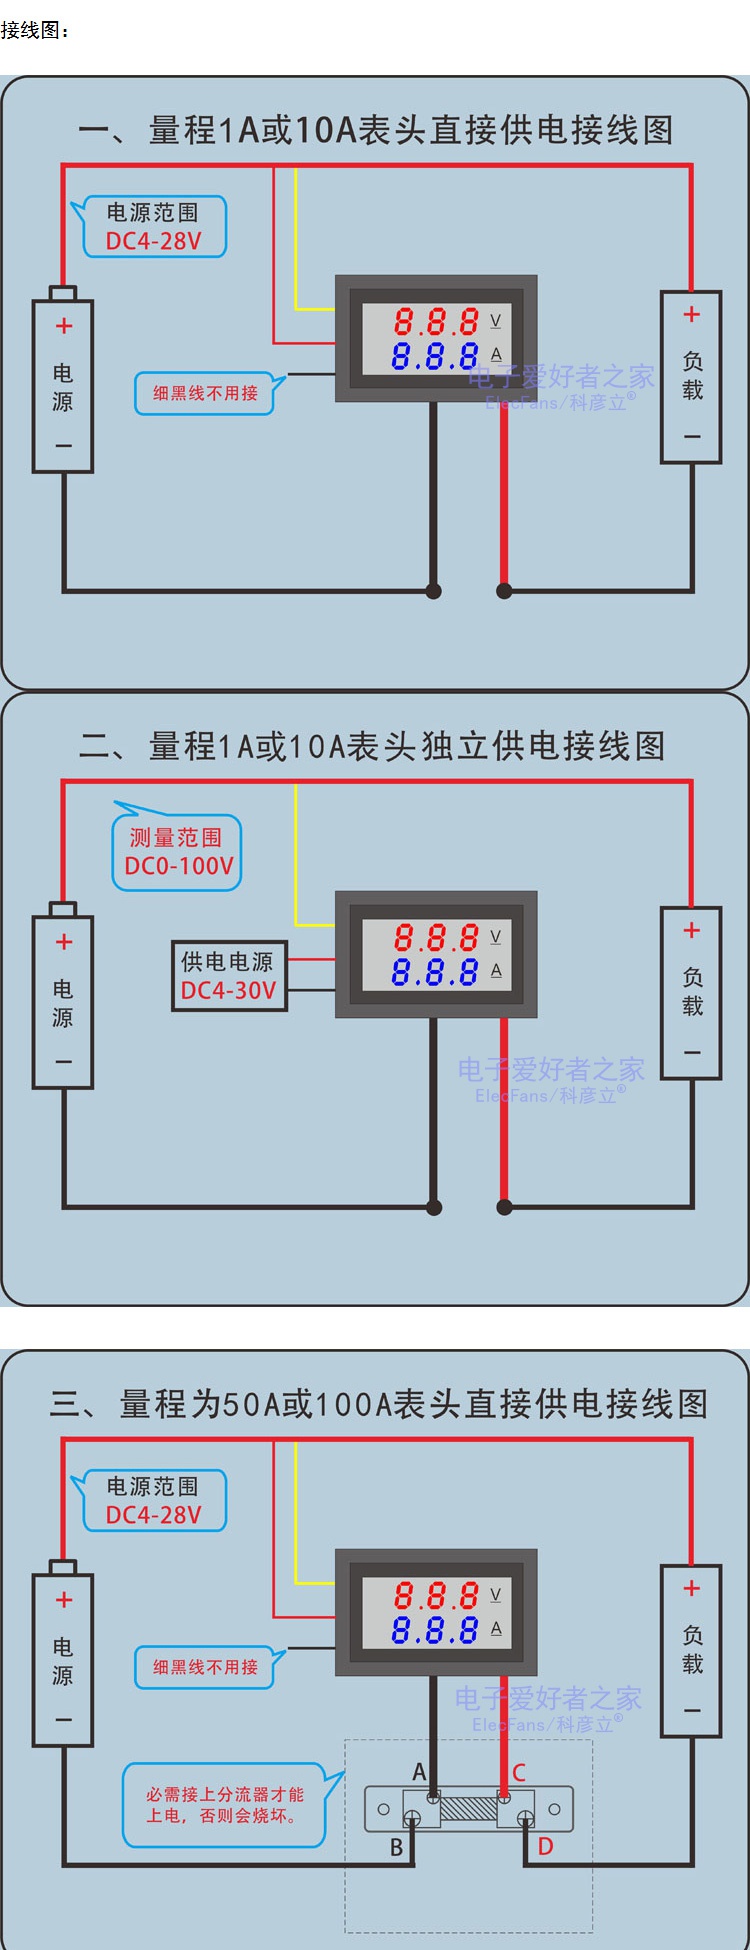 新之昌仪器仪表电压表/电流表 直流数显dc电压表电流表双显示数码管